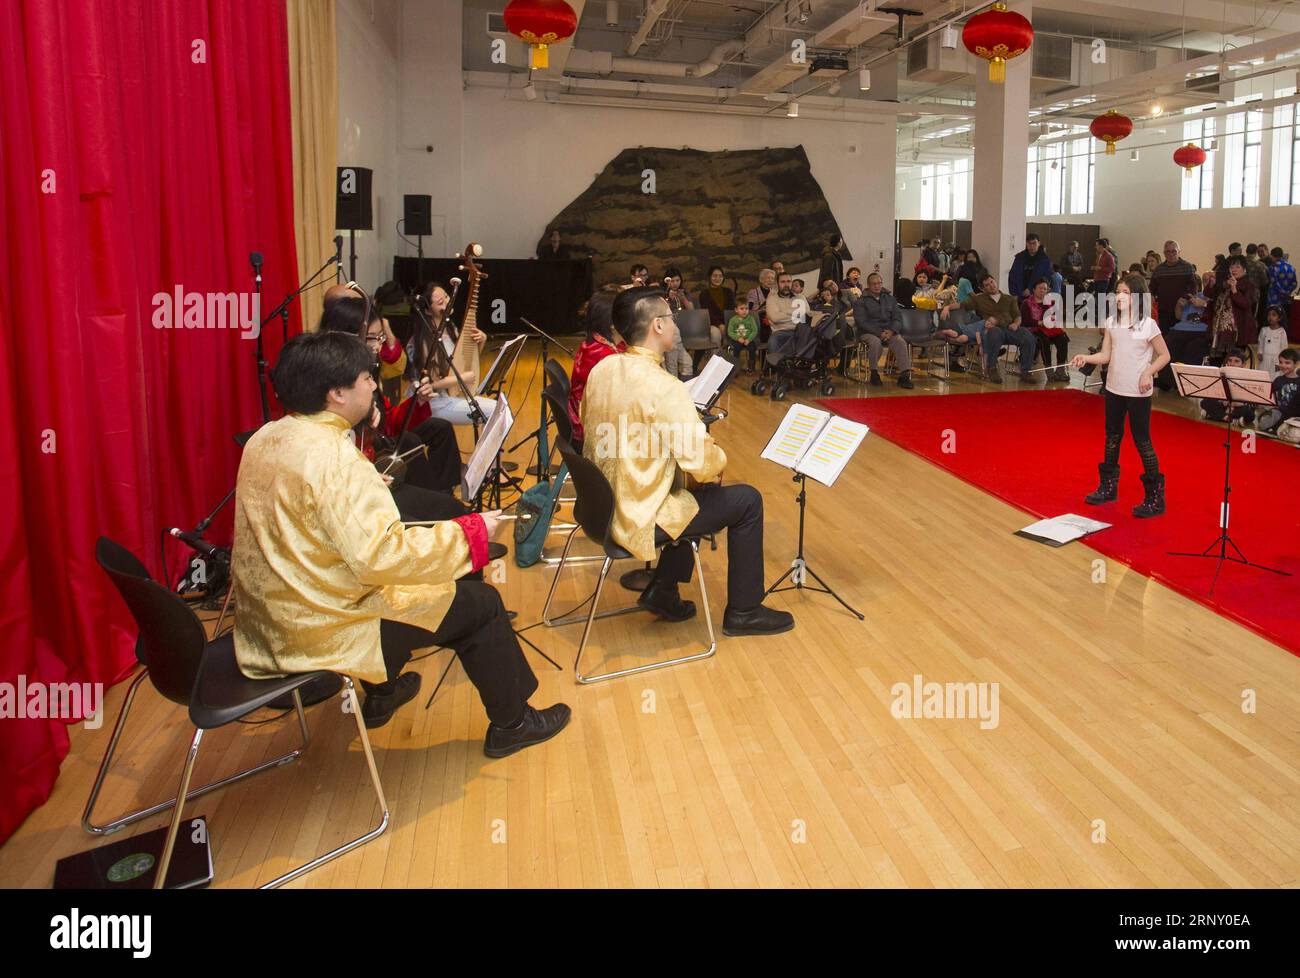 (180219) -- TORONTO, 19. Februar 2018 -- A Girl (R) konzertiert mit einem chinesischen Orchester als Dirigent während der 2018 Toronto Happy Chinese New Year Reception & Family Day Weekend Veranstaltung im Royal Ontario Museum (ROM) in Toronto, Kanada, 18. Februar 2018. Mit chinesischen Papercuts, Kalligraphie, Löwentanz und mehr begann dieses jährliche chinesische Neujahrsfest am Sonntag, um Hunderte von Besuchern anzulocken, um das chinesische Neujahrsfest des Hundes im Royal Ontario Museum in Toronto zu feiern. ) (srb) CANADA-TORONTO-CHINESE NEW YEAR-MUSEUM CELEBRATION ZouxZheng PUBLICATIONxNOTxINxCHN Stockfoto